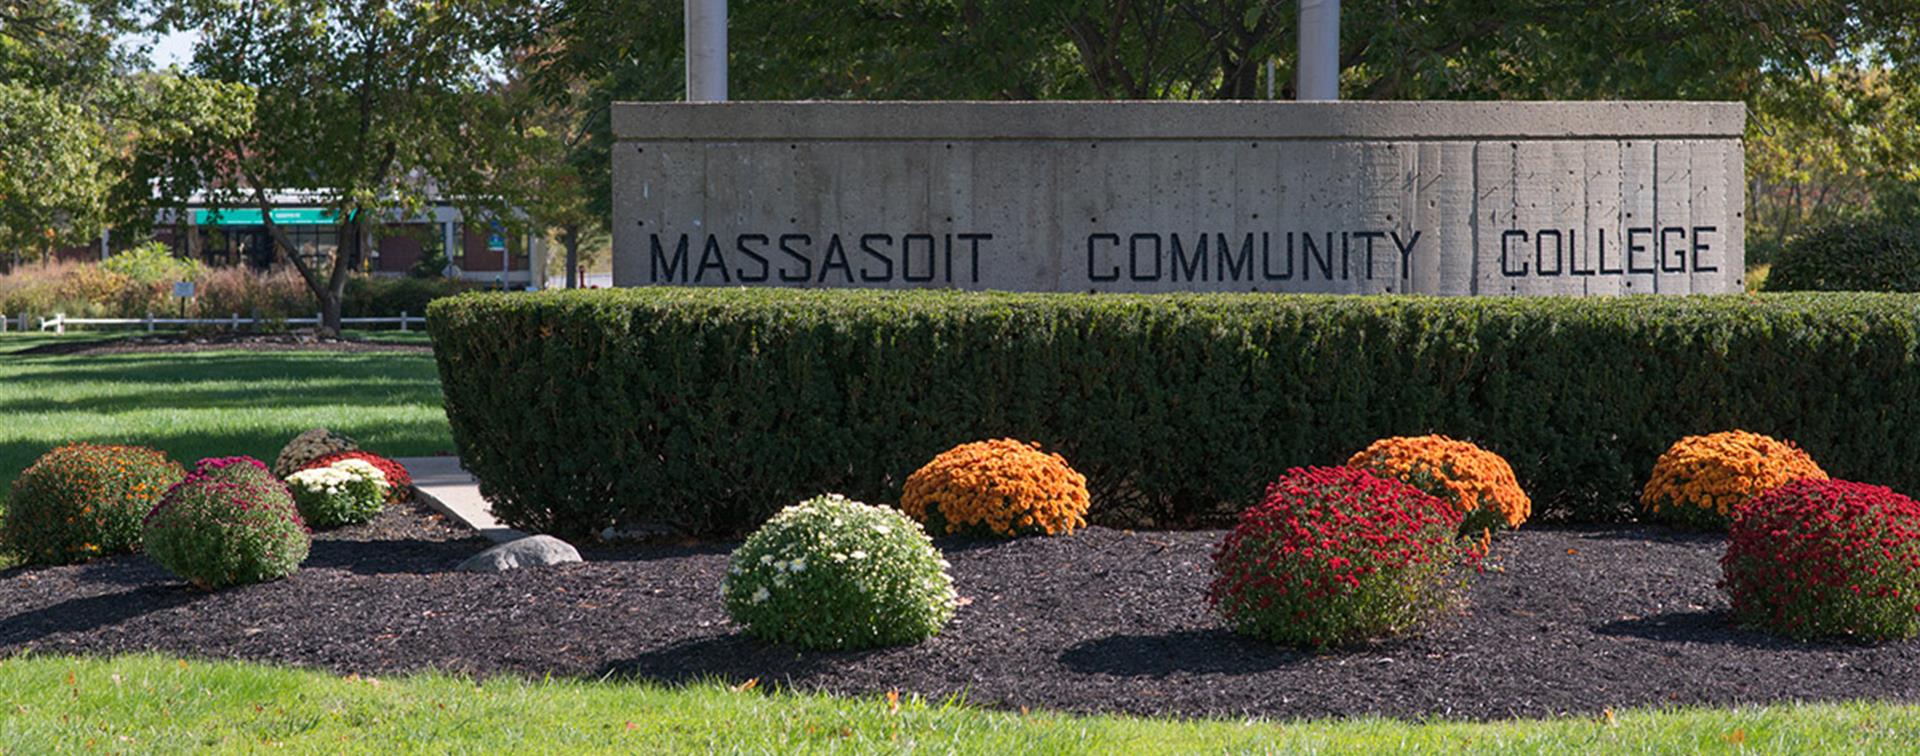 Massasoit Community College campus